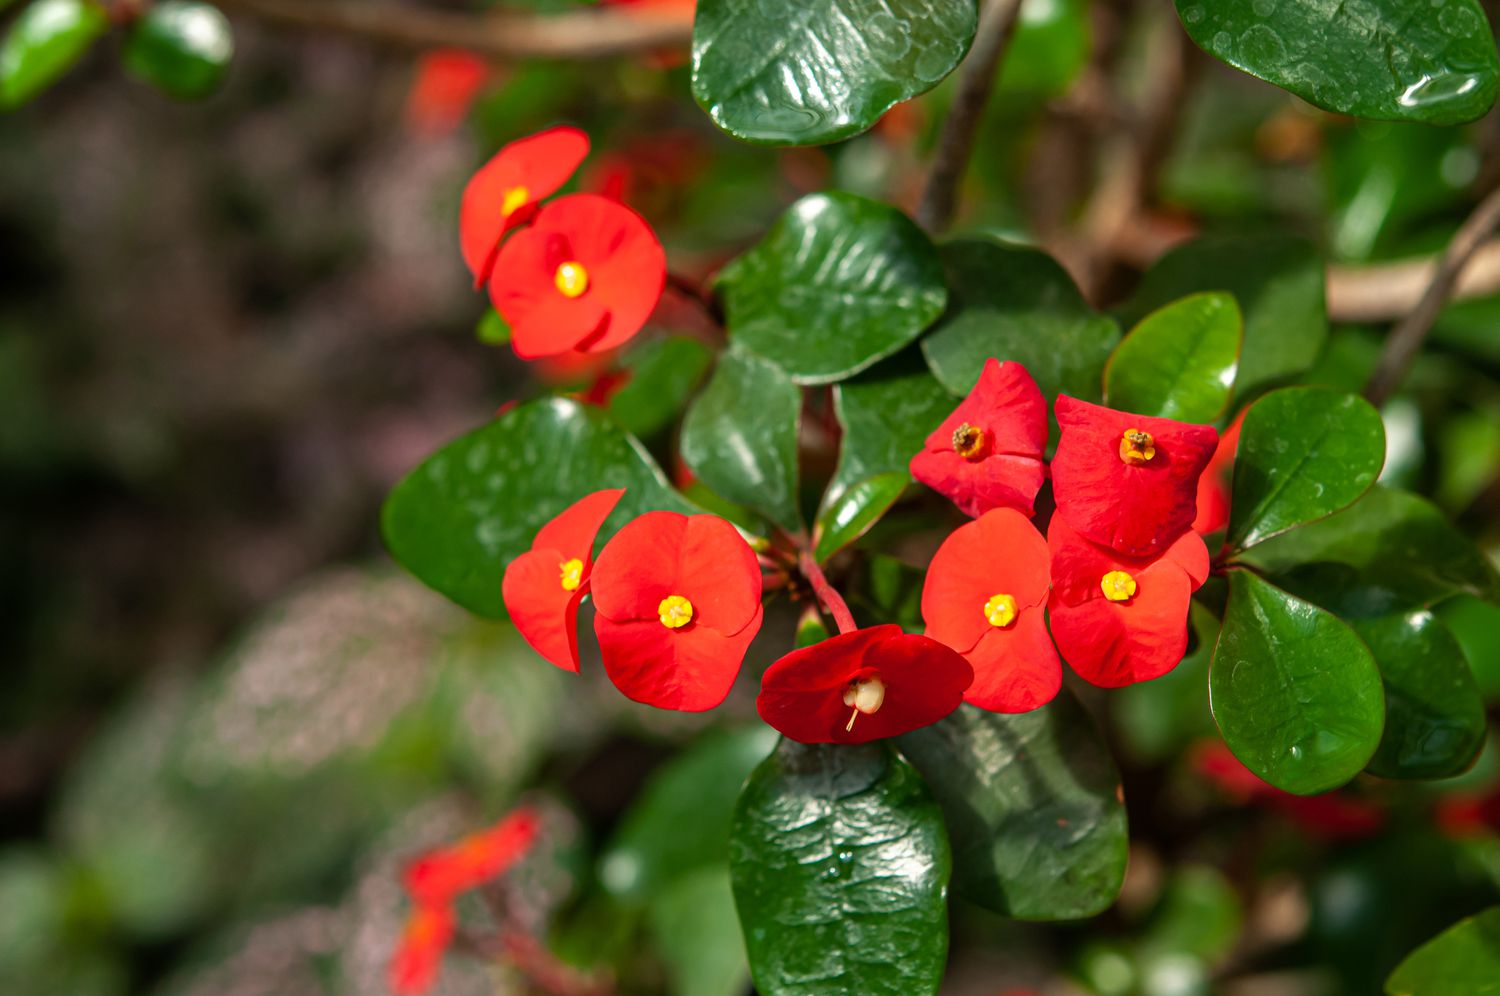 Dornenkronenzweig mit roten Blüten und Blättern in Nahaufnahme